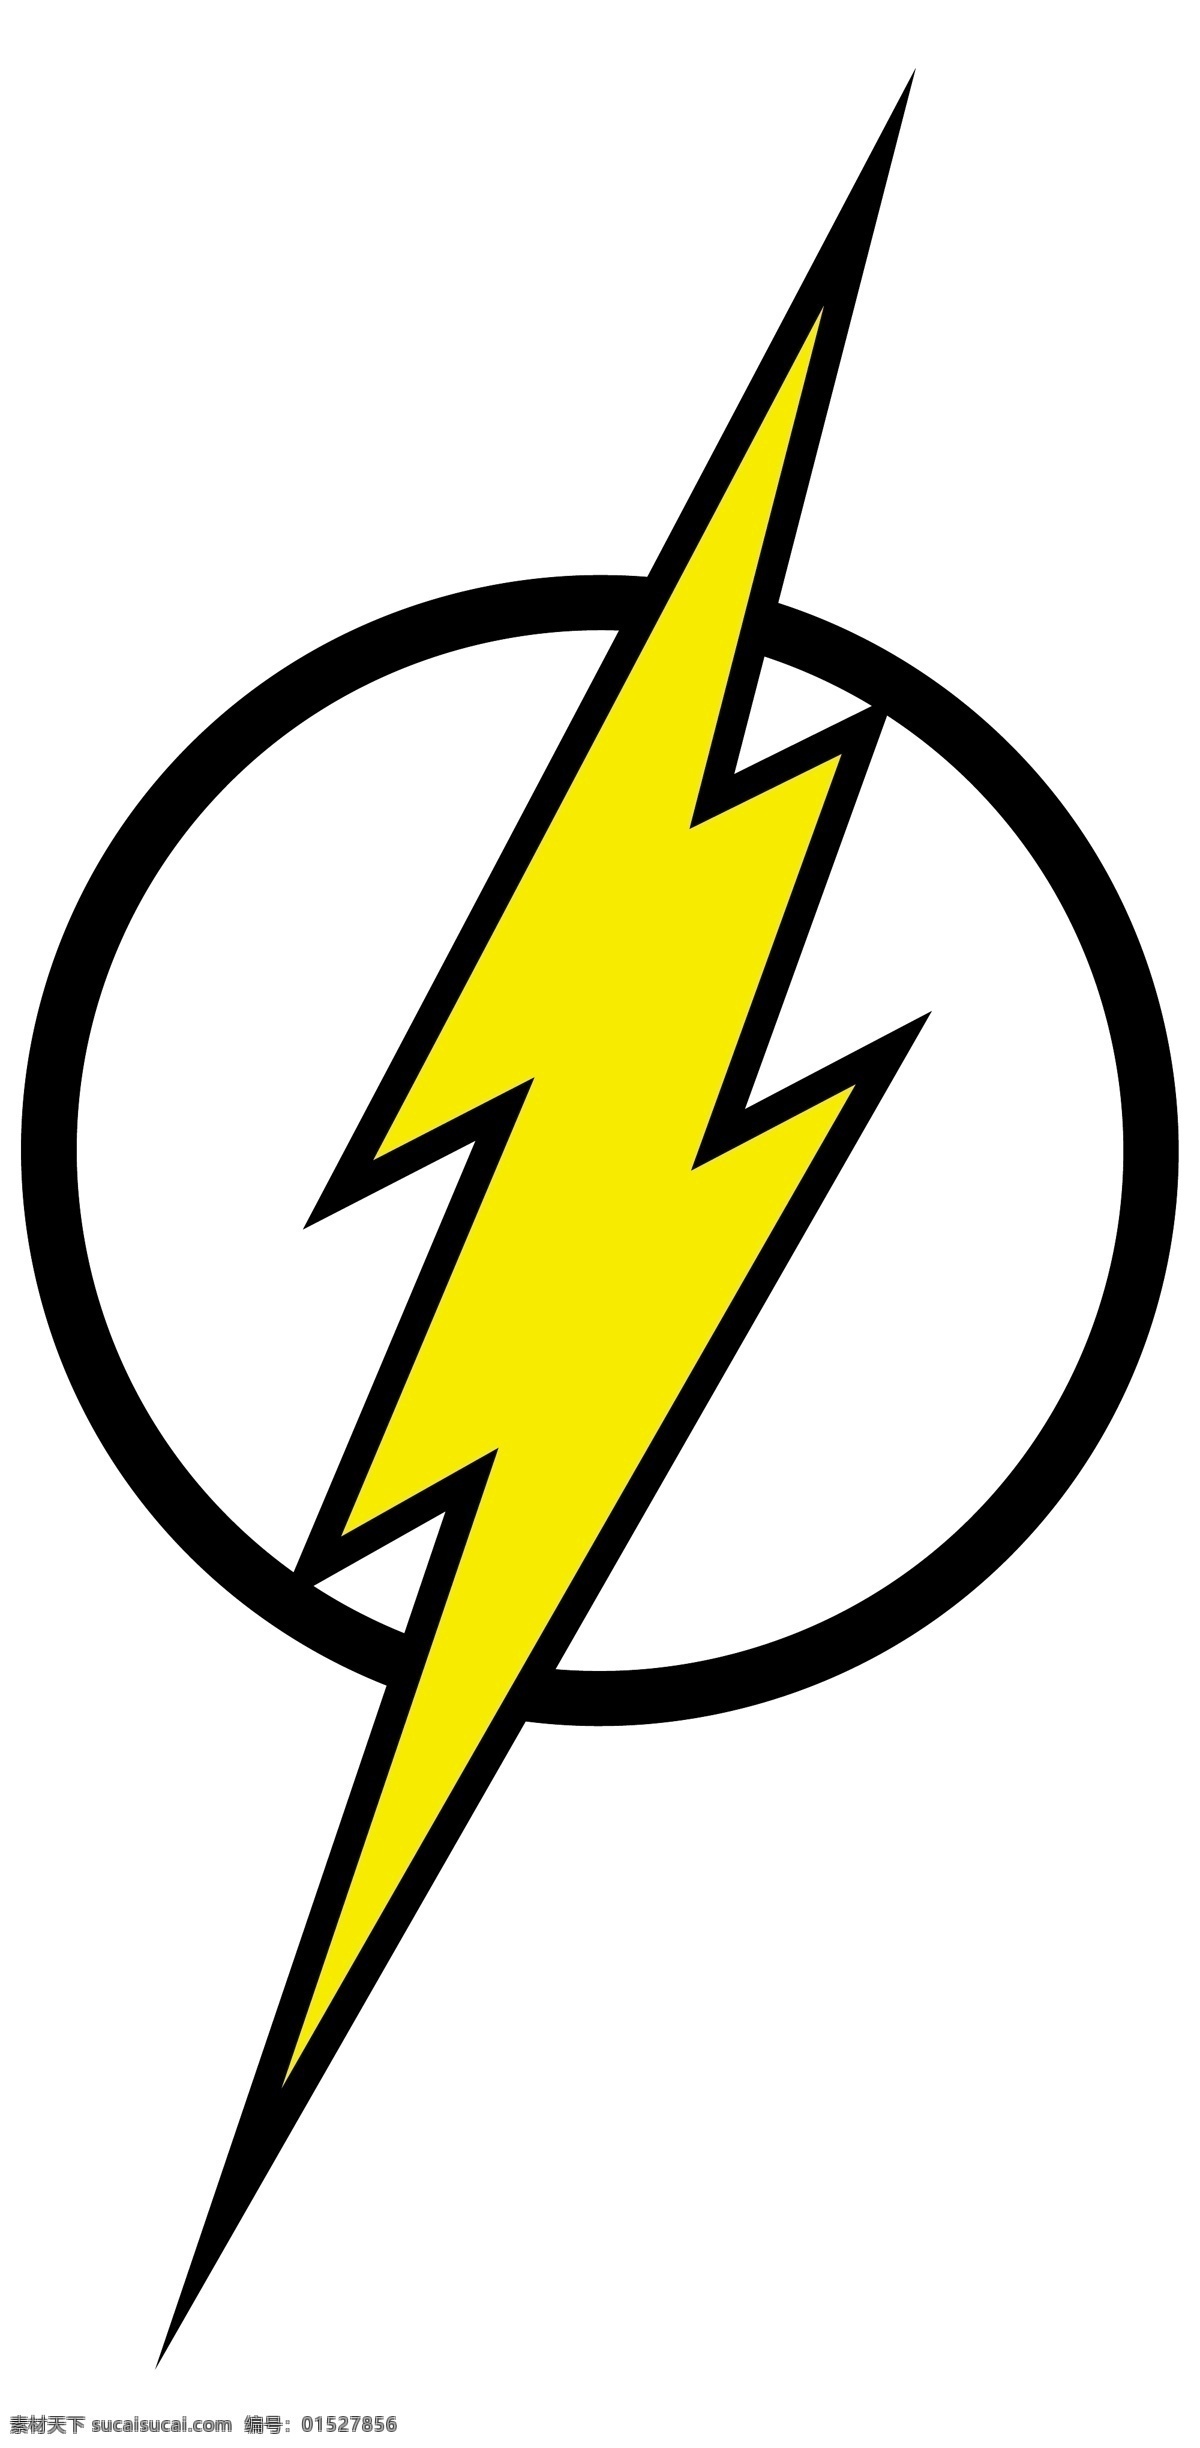 闪电侠标志 标志 超人 superman 蝙蝠侠 batman 闪电侠 flash 华纳 dc漫画 超级英雄 英雄联盟 卡通形象 其他人物 矢量人物 矢量 超人英雄标志 小图标 标识标志图标